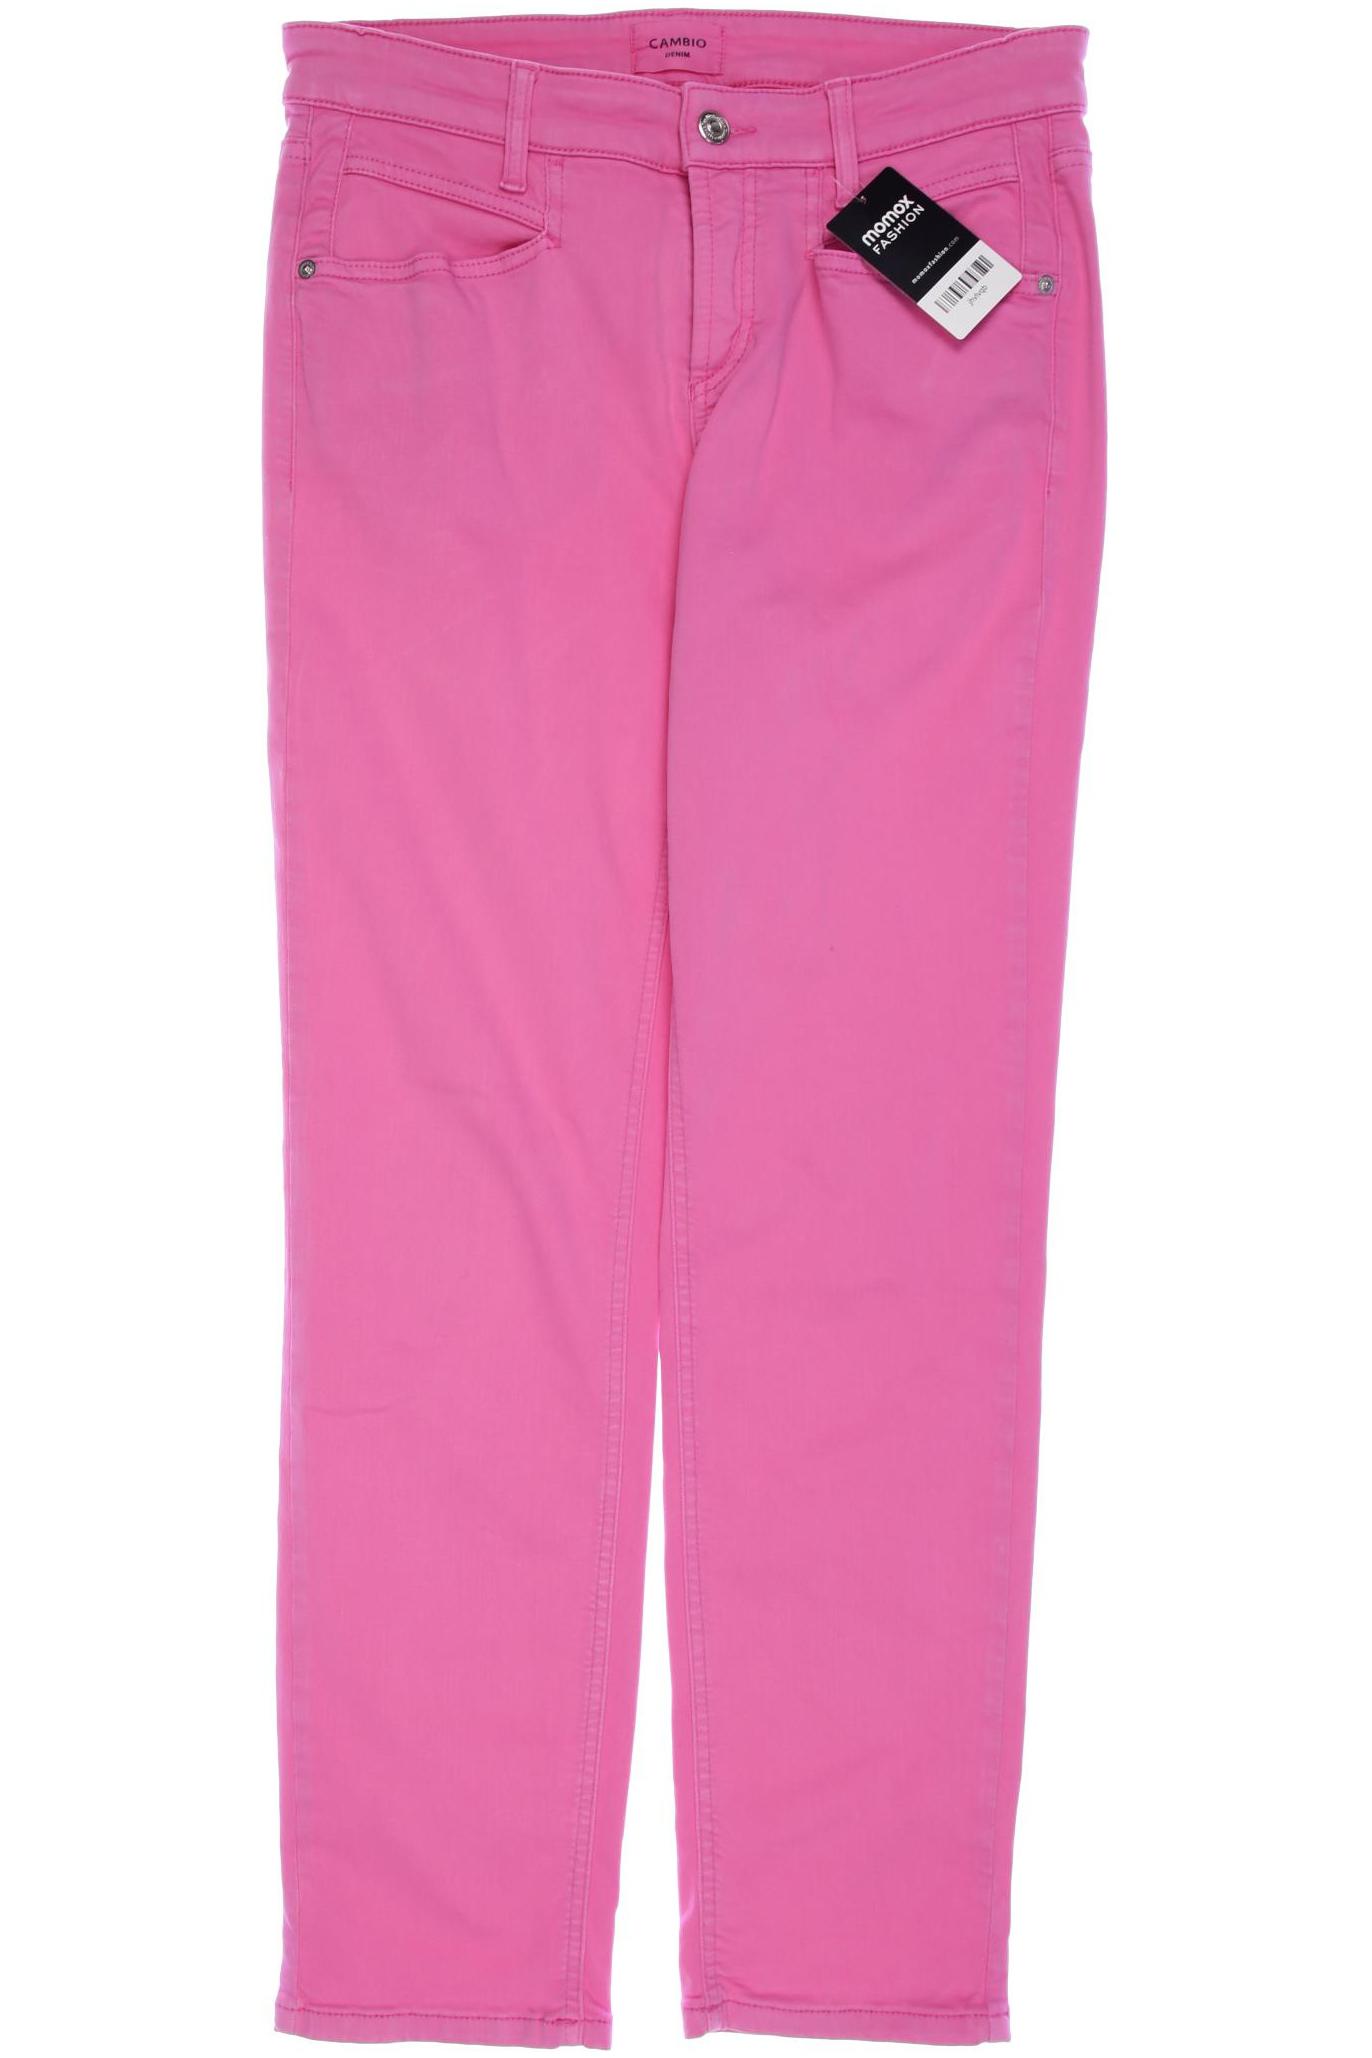 Cambio Damen Jeans, pink, Gr. 40 von CAMBIO